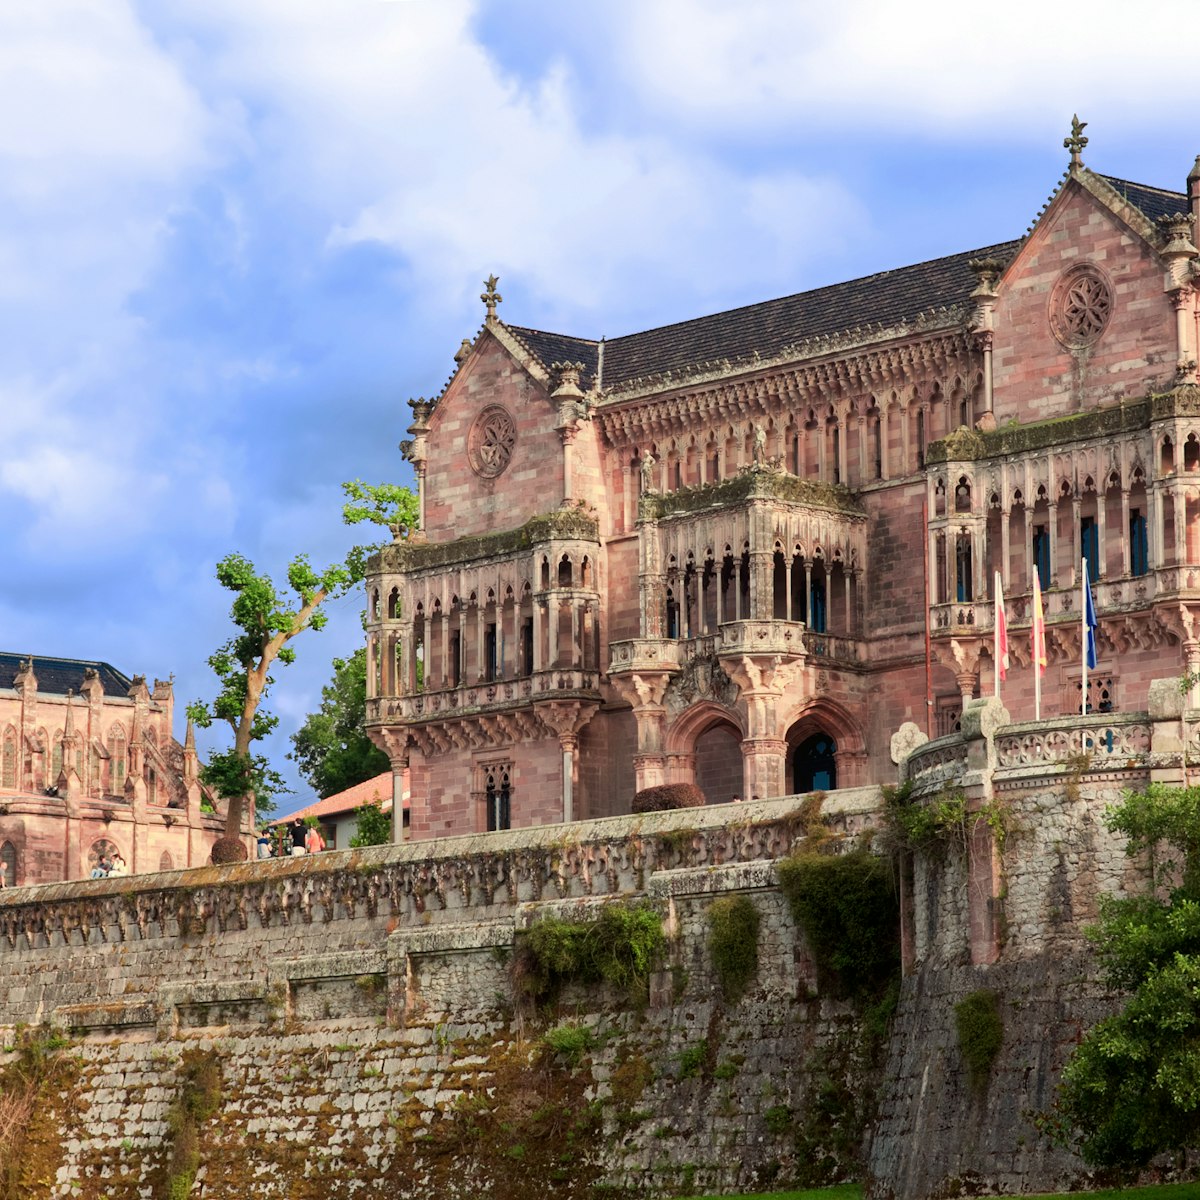 Palace Sobrellano, Comillas, Cantabria, Spain; Shutterstock ID 283084049